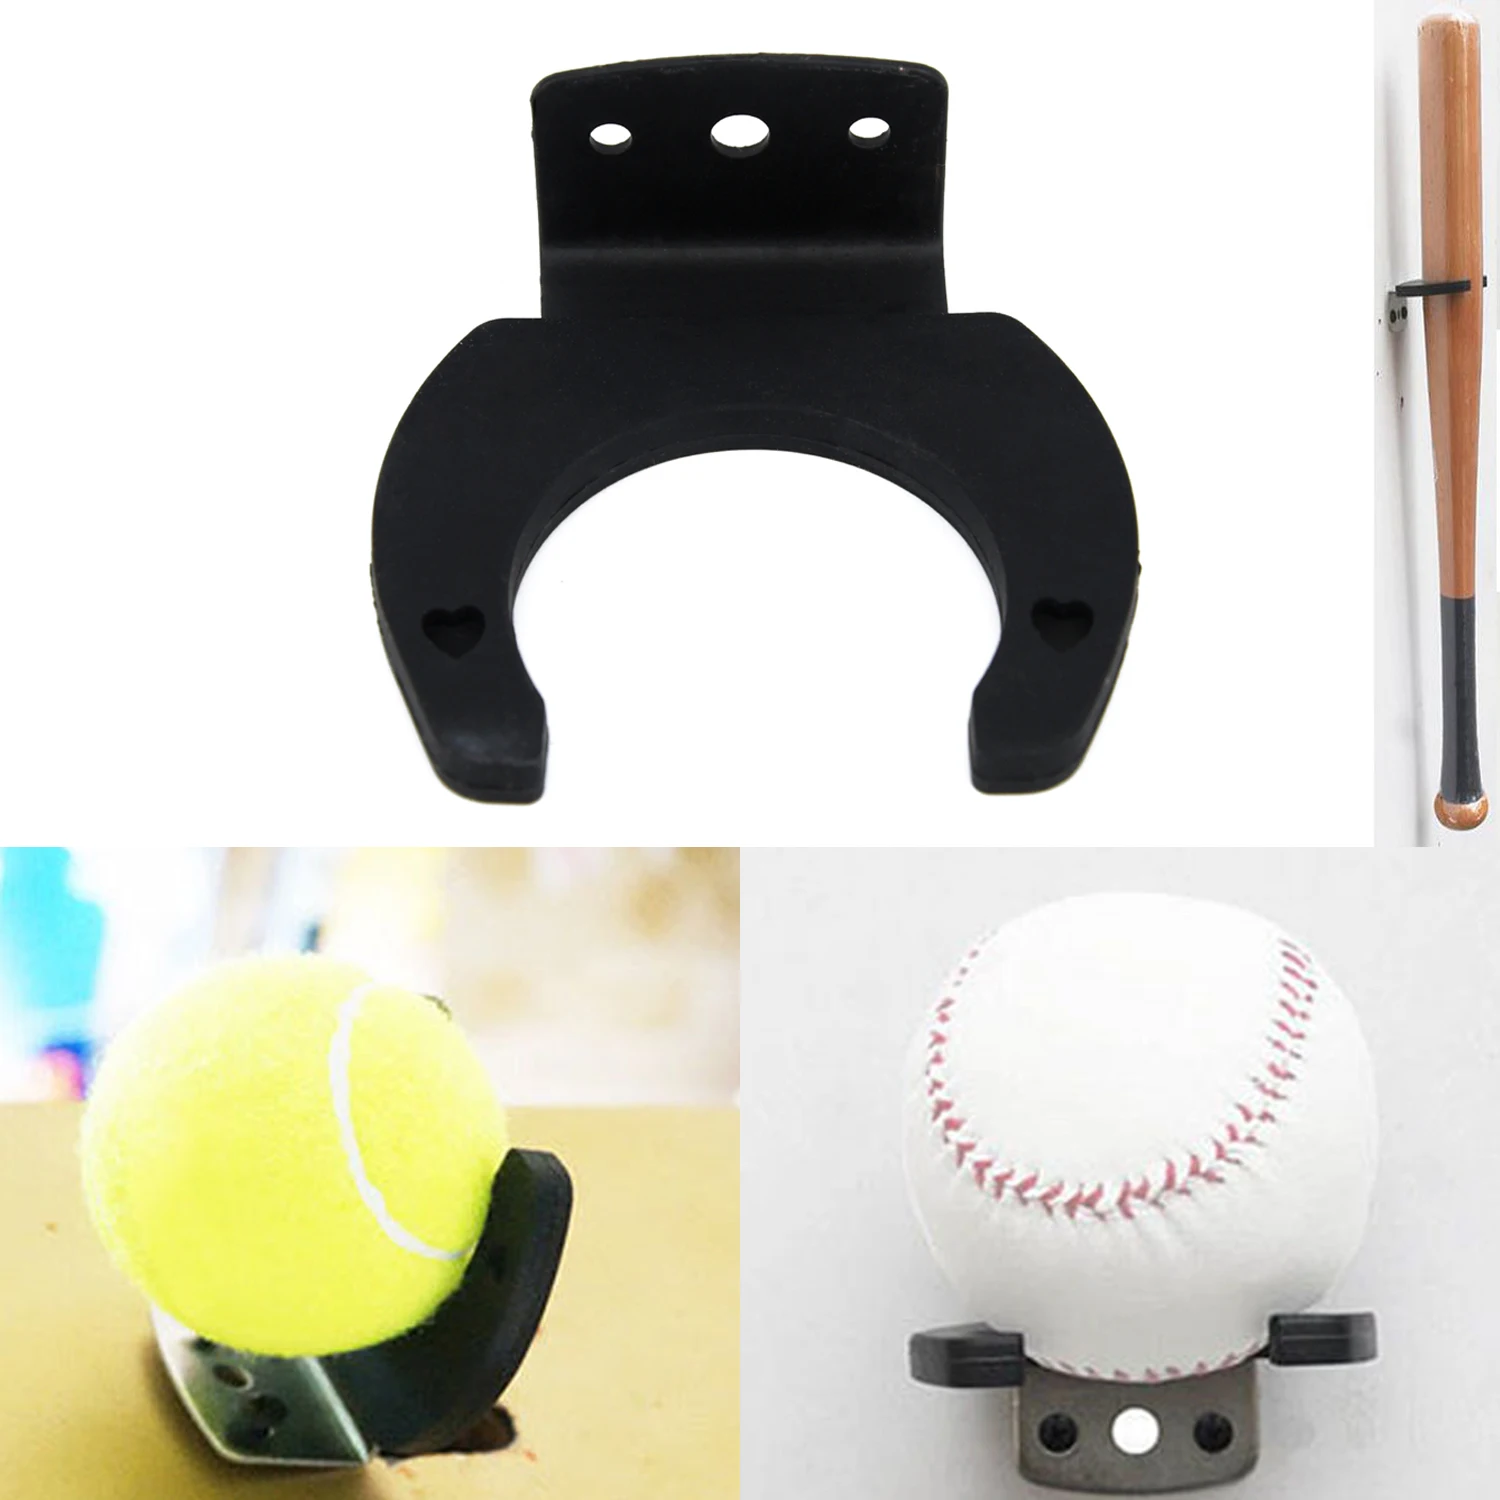 Soporte de exhibición de bate de béisbol, estante de montaje en pared con tornillos de montaje para tenis Vertical, Universal, color negro, 1 Juego